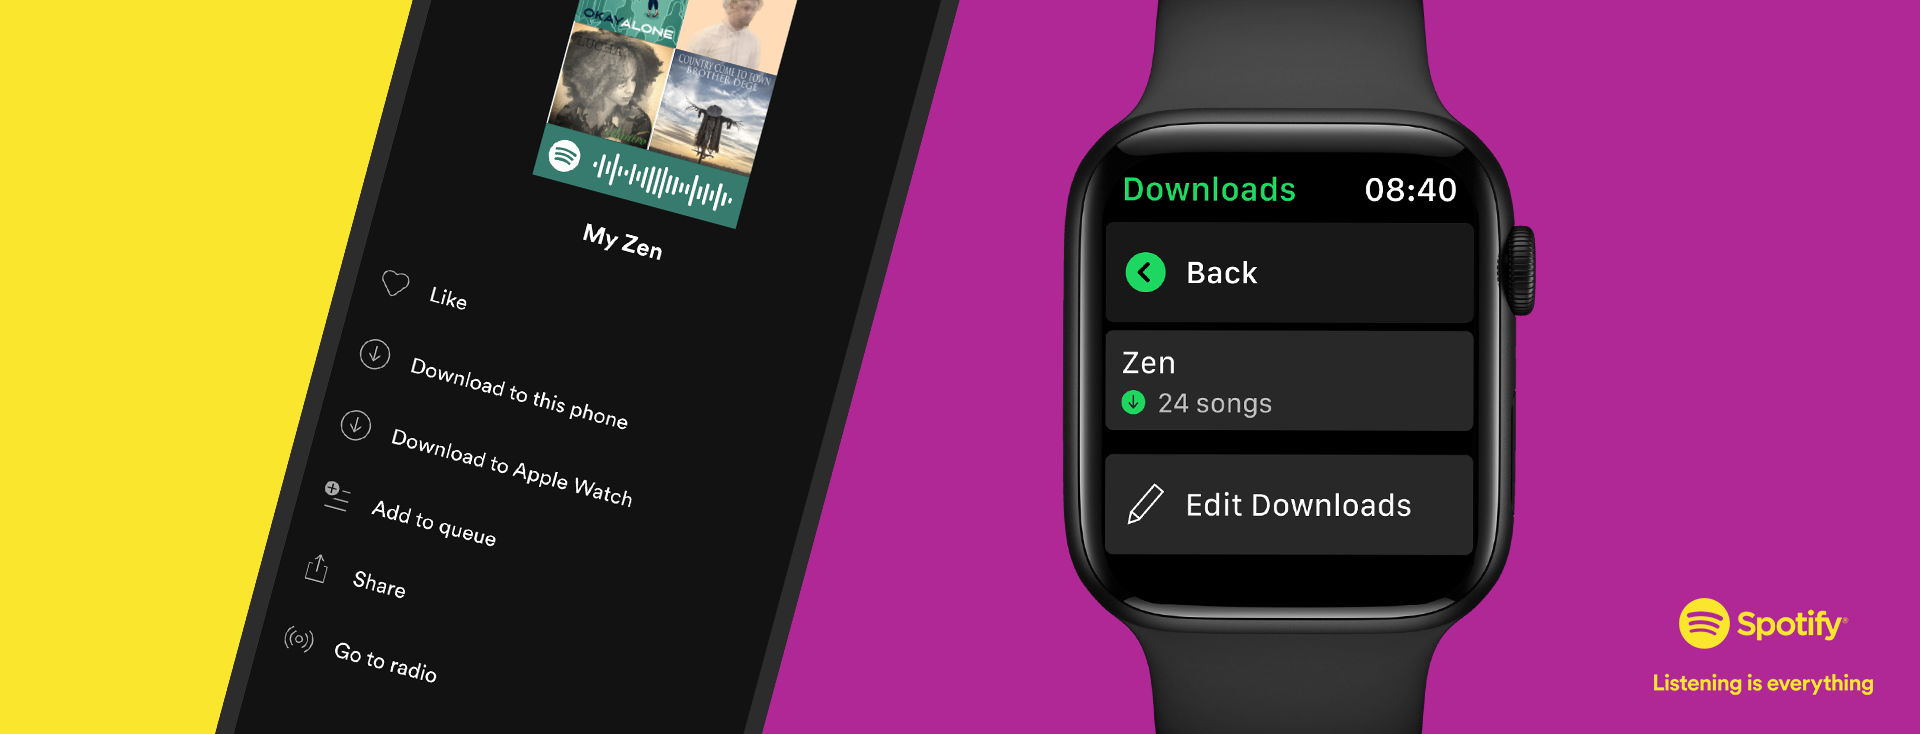 Digital 7 July 2021 أخيرًا: يطرح Spotify التشغيل دون اتصال للجميع Apple Watch-مستخدمون